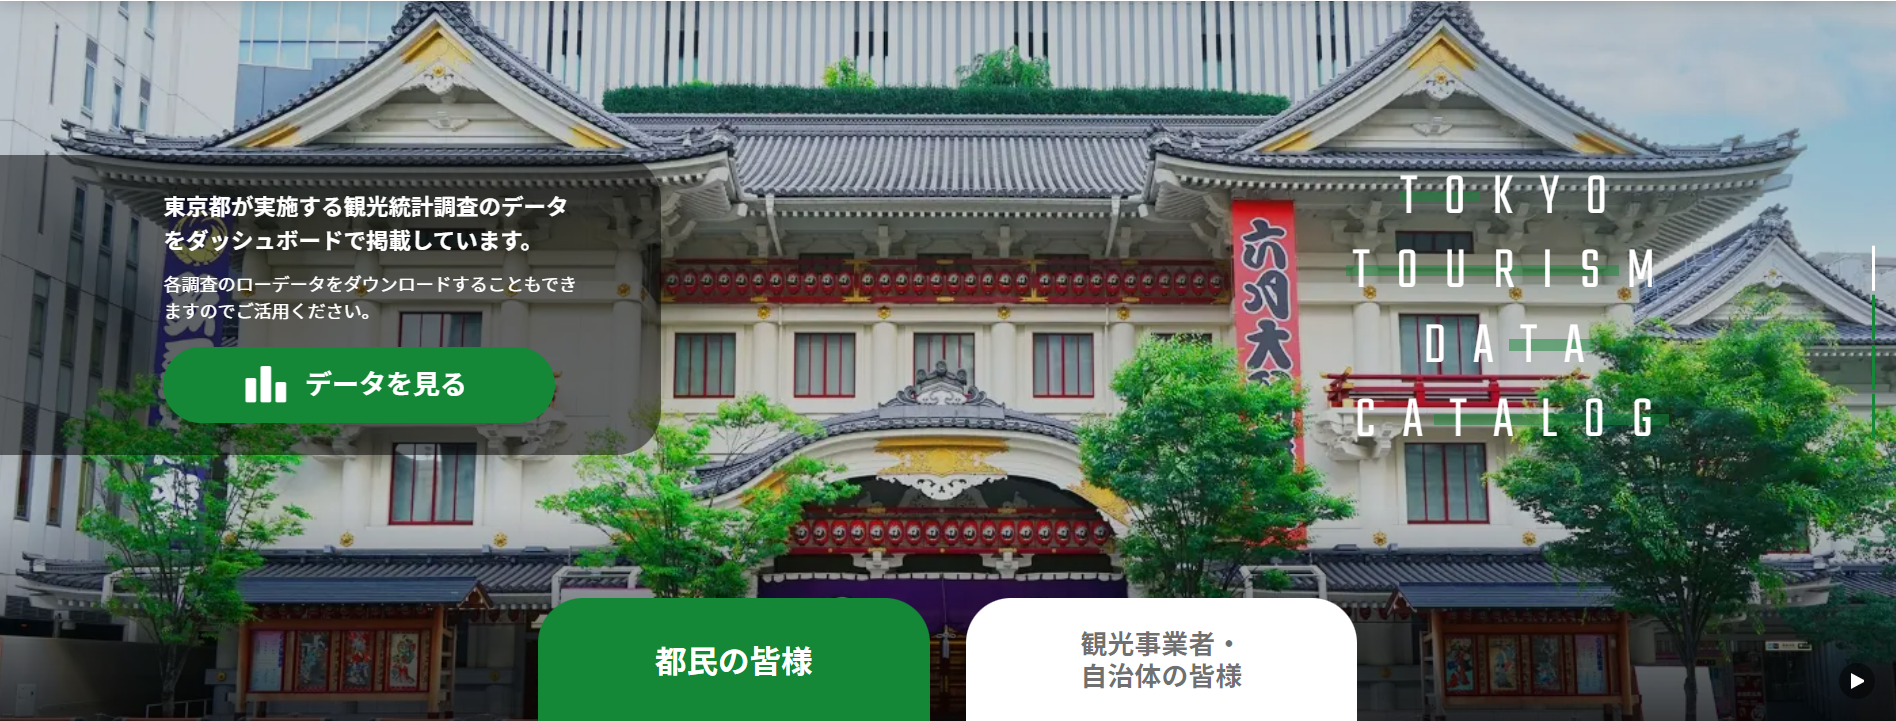 「東京都観光データカタログ」トップ画面